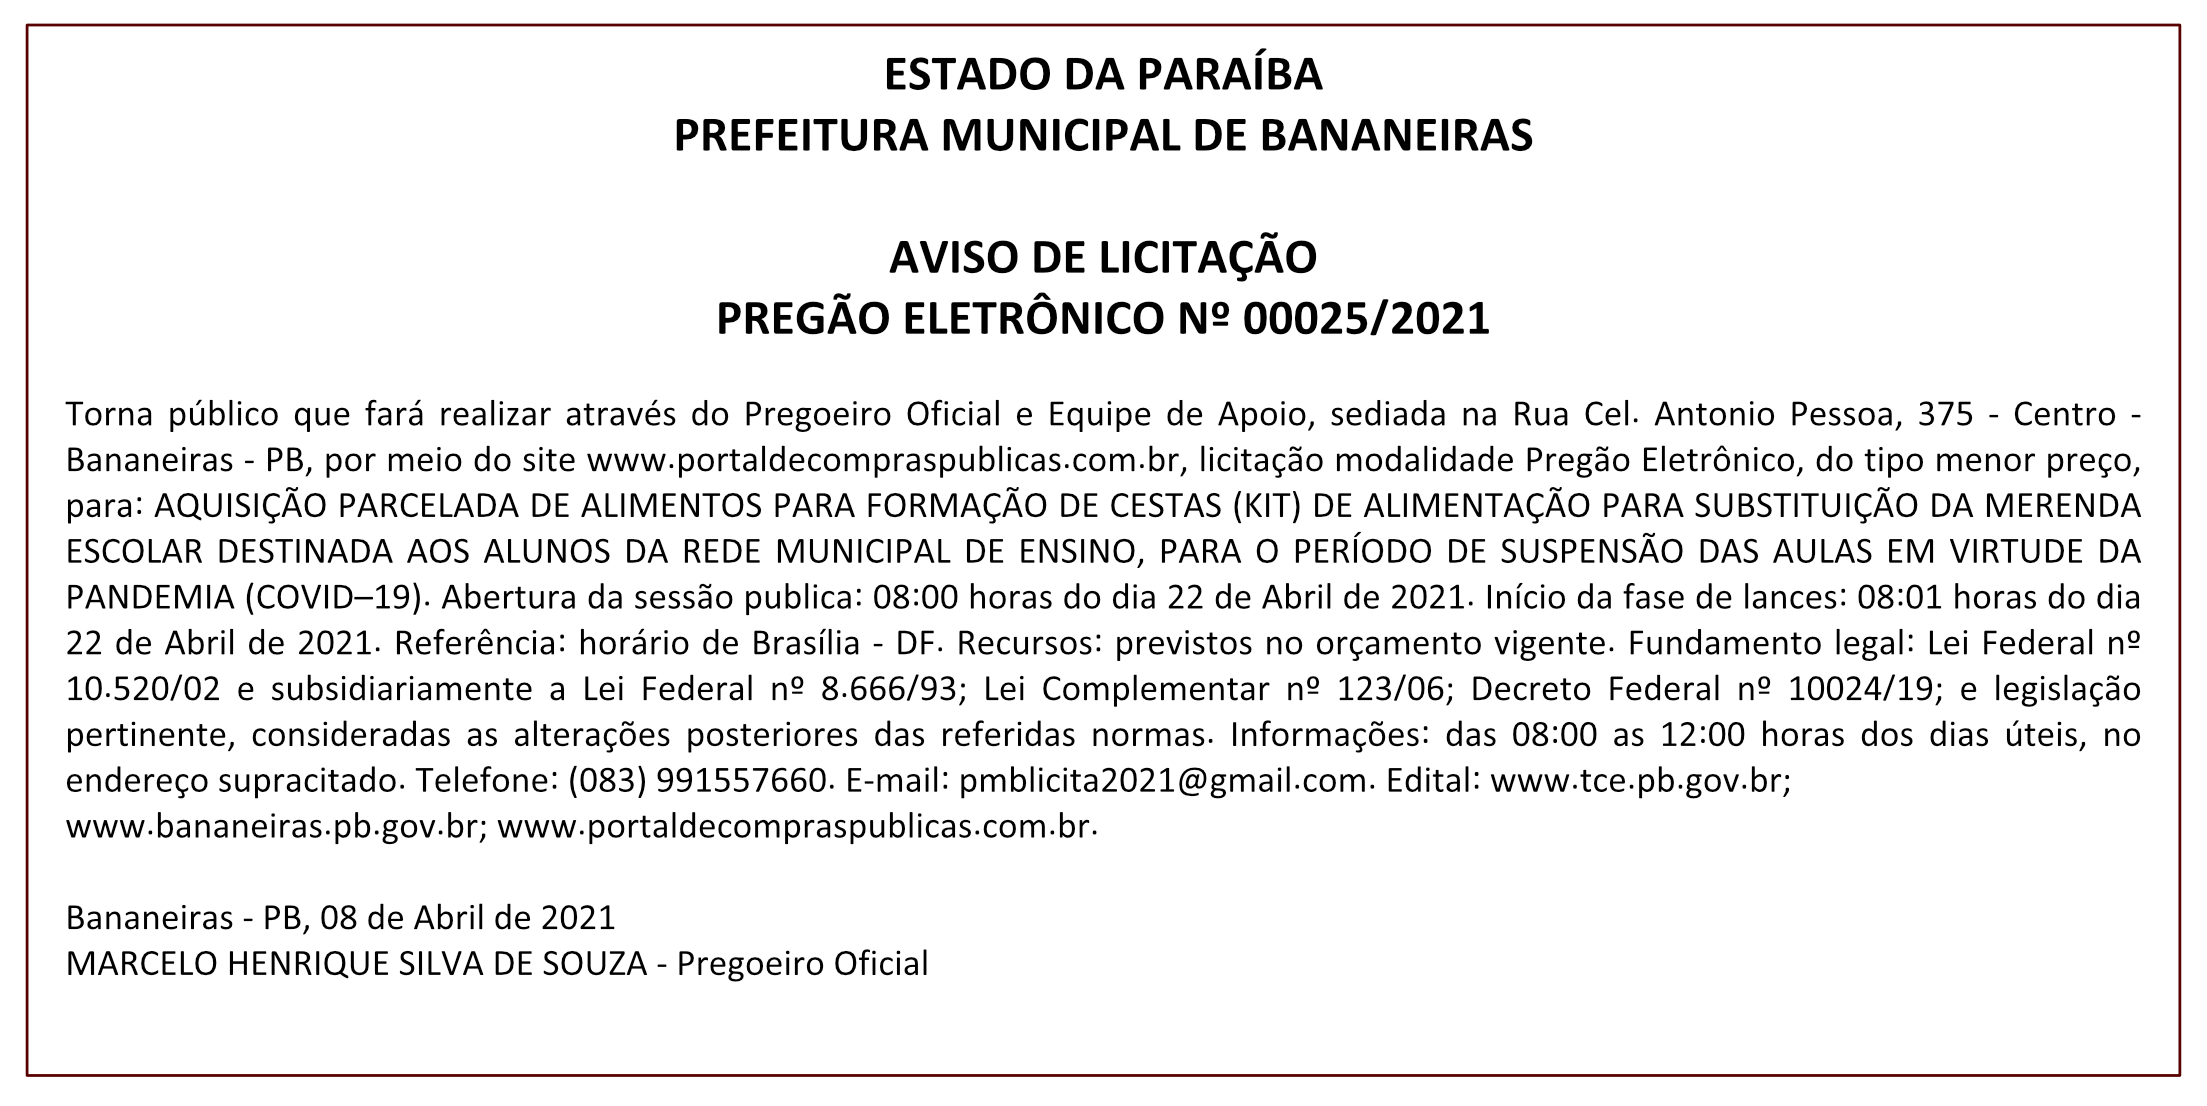 PREFEITURA MUNICIPAL DE BANANEIRAS – AVISO DE LICITAÇÃO – PREGÃO ELETRÔNICO Nº 00025/2021